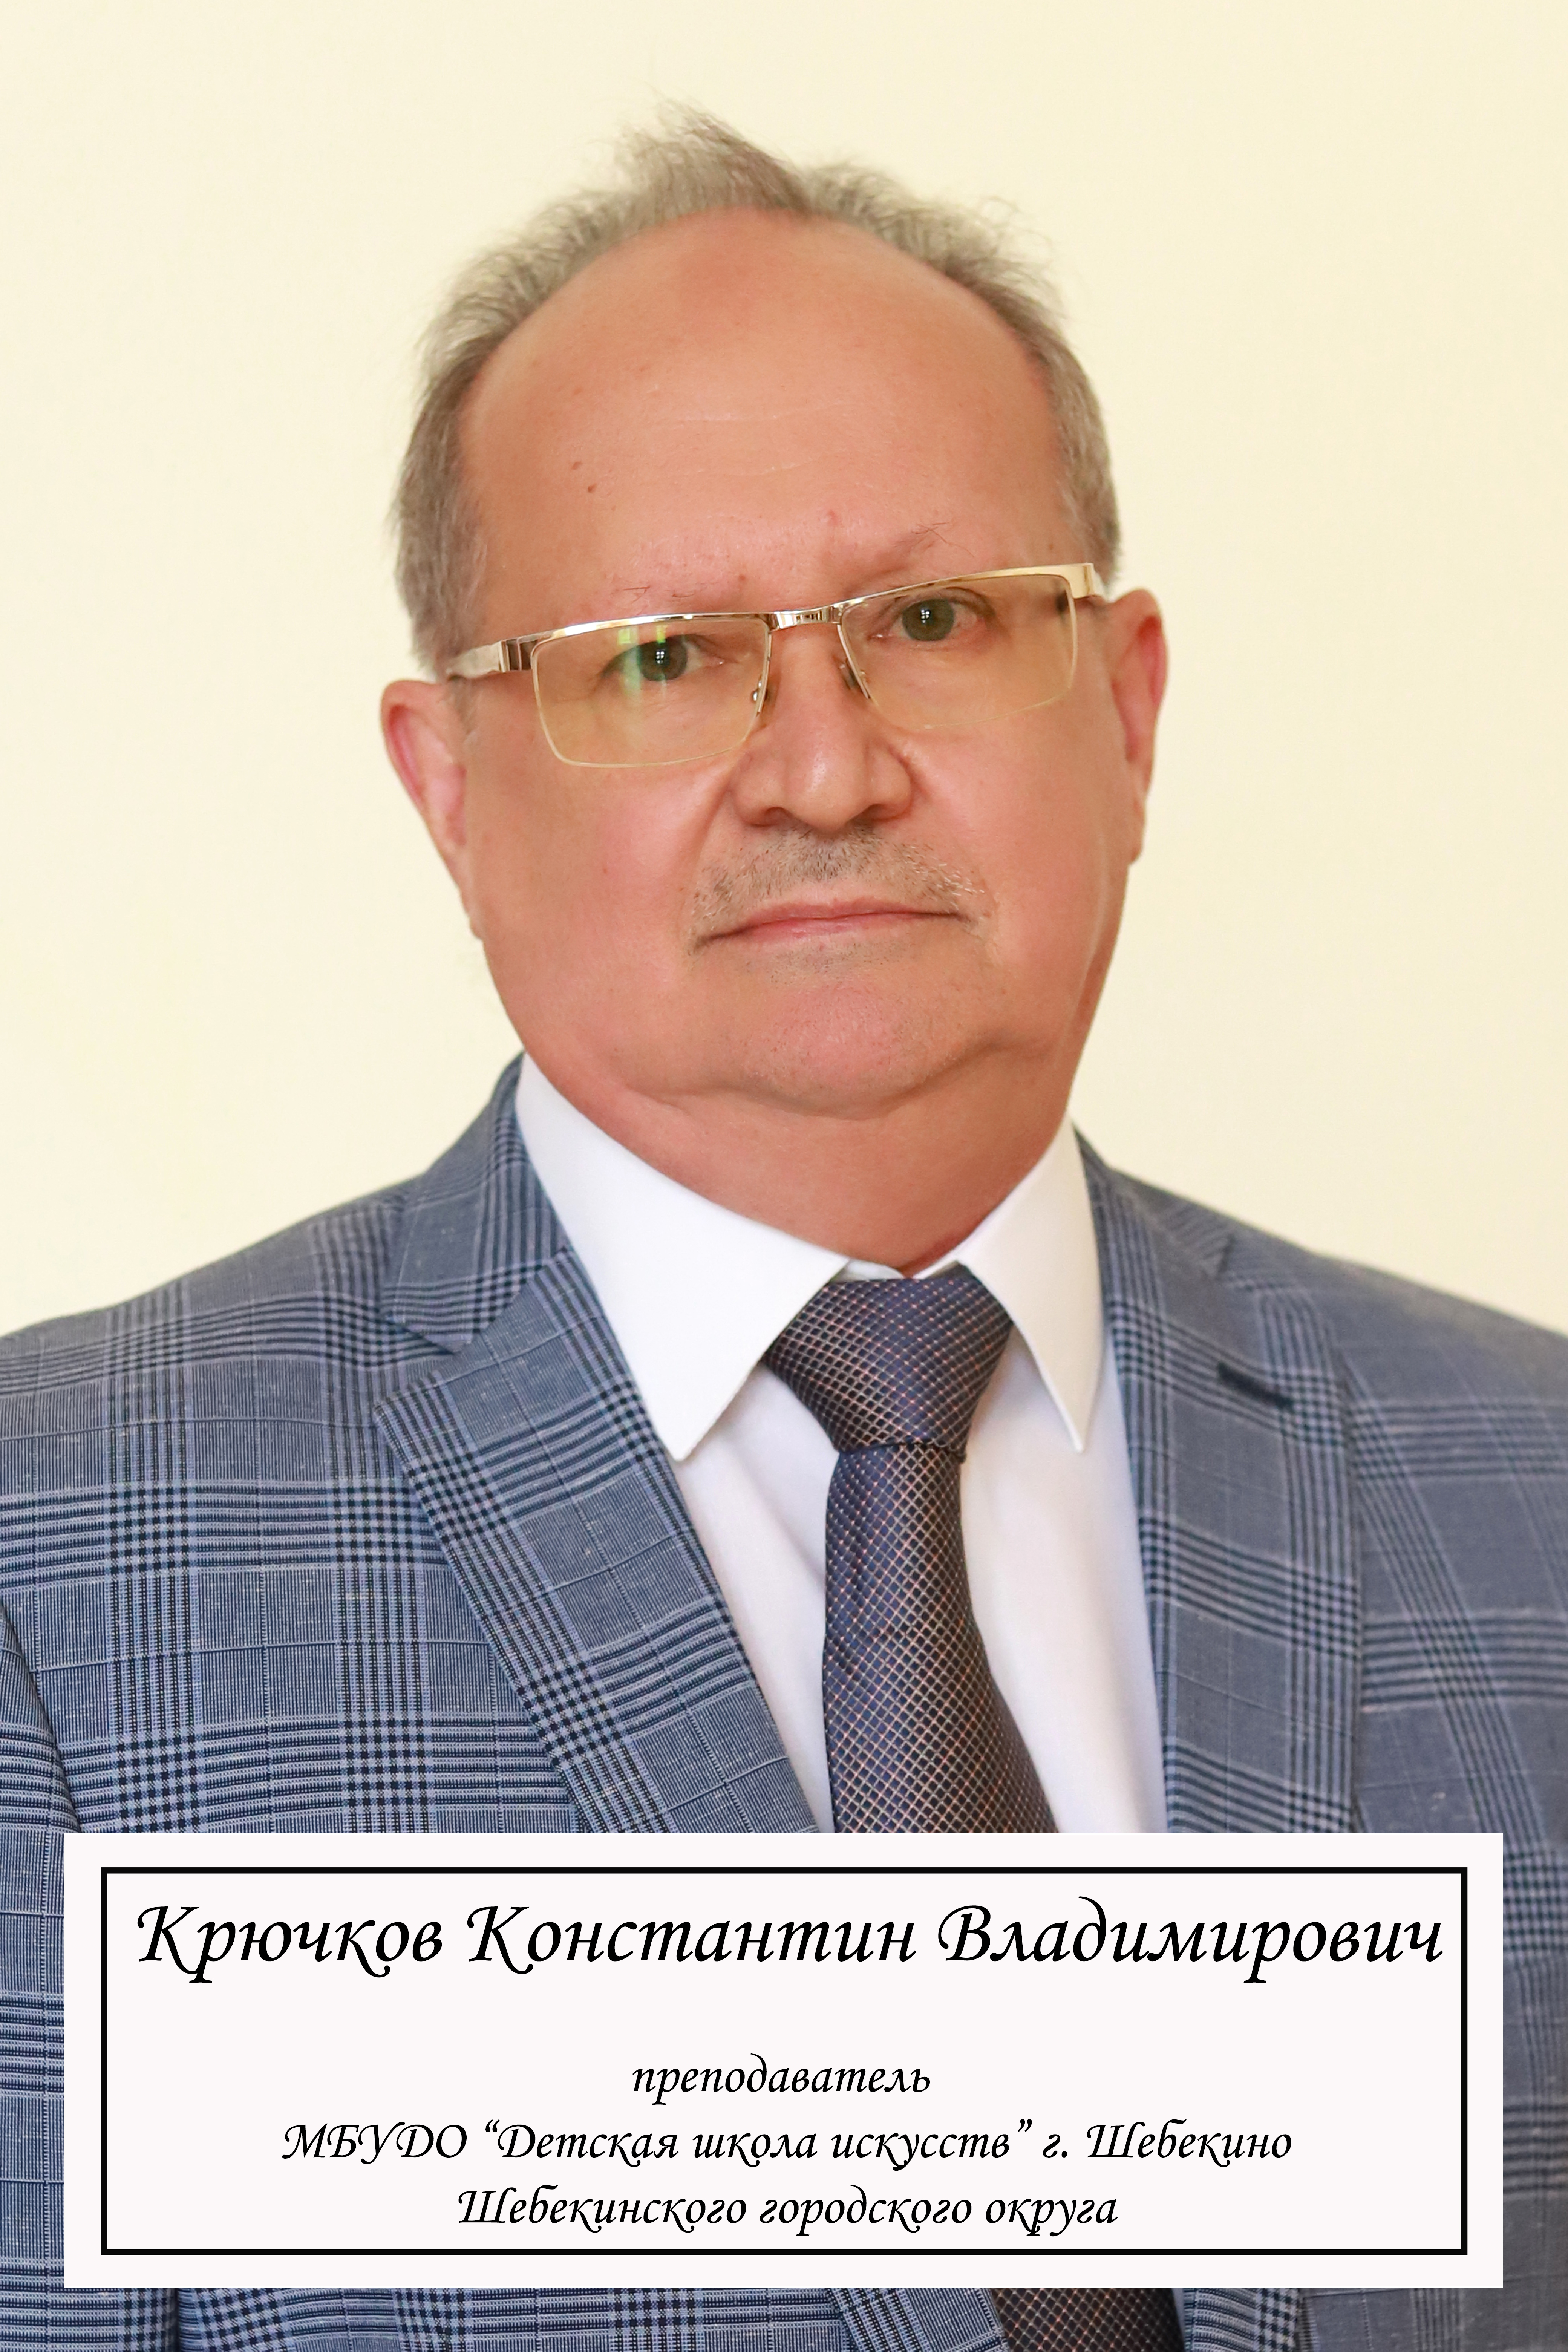 Крючков Константин Владимирович.